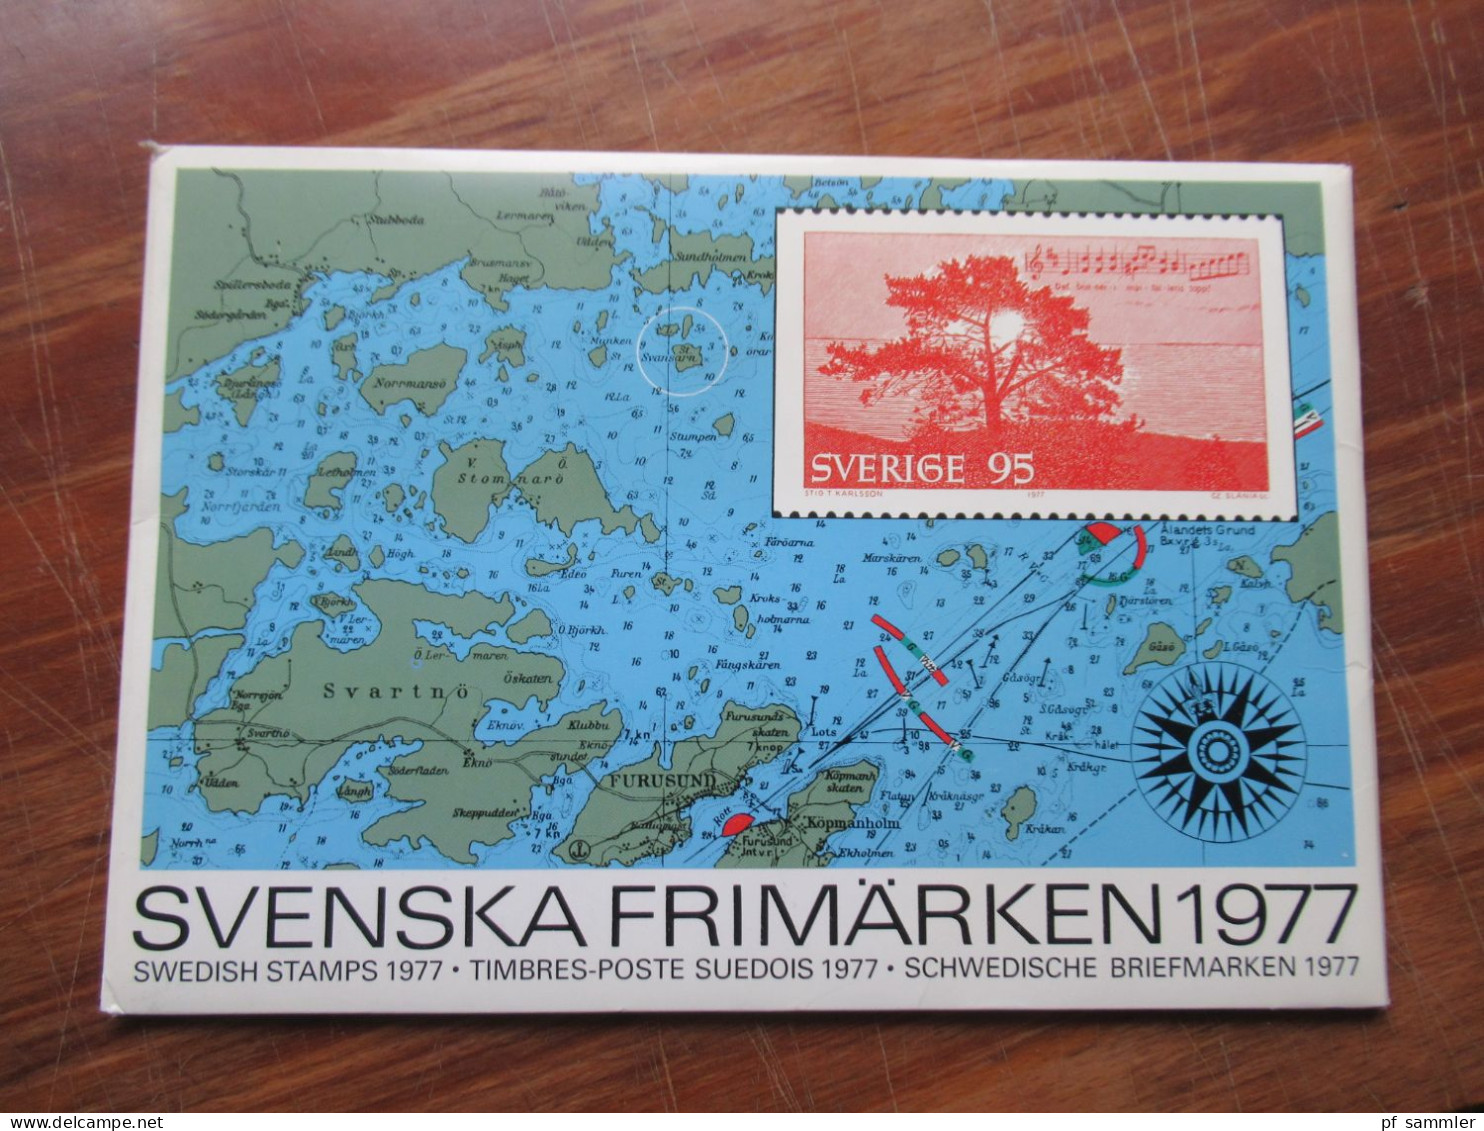 Schweden Jahreszusammenstellungen / Svenska Frimärken 1973 -1987 Nominale / damaliger Verkaufspreis von über 1268 Kronen